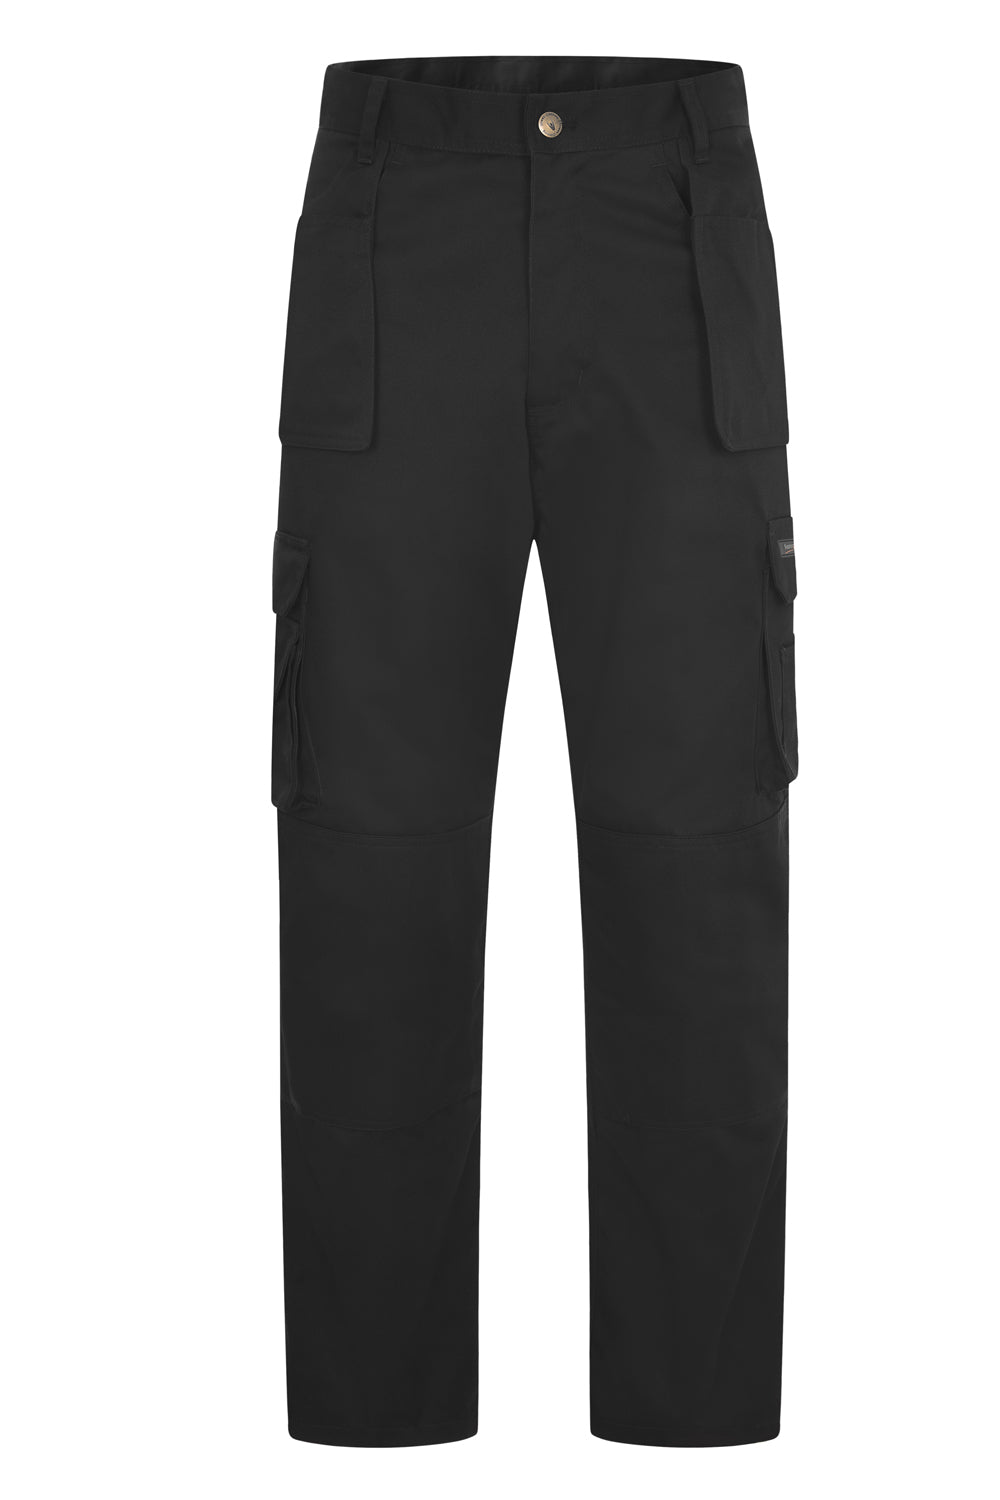 Uneek Super Pro Trouser Short UC906s - Black